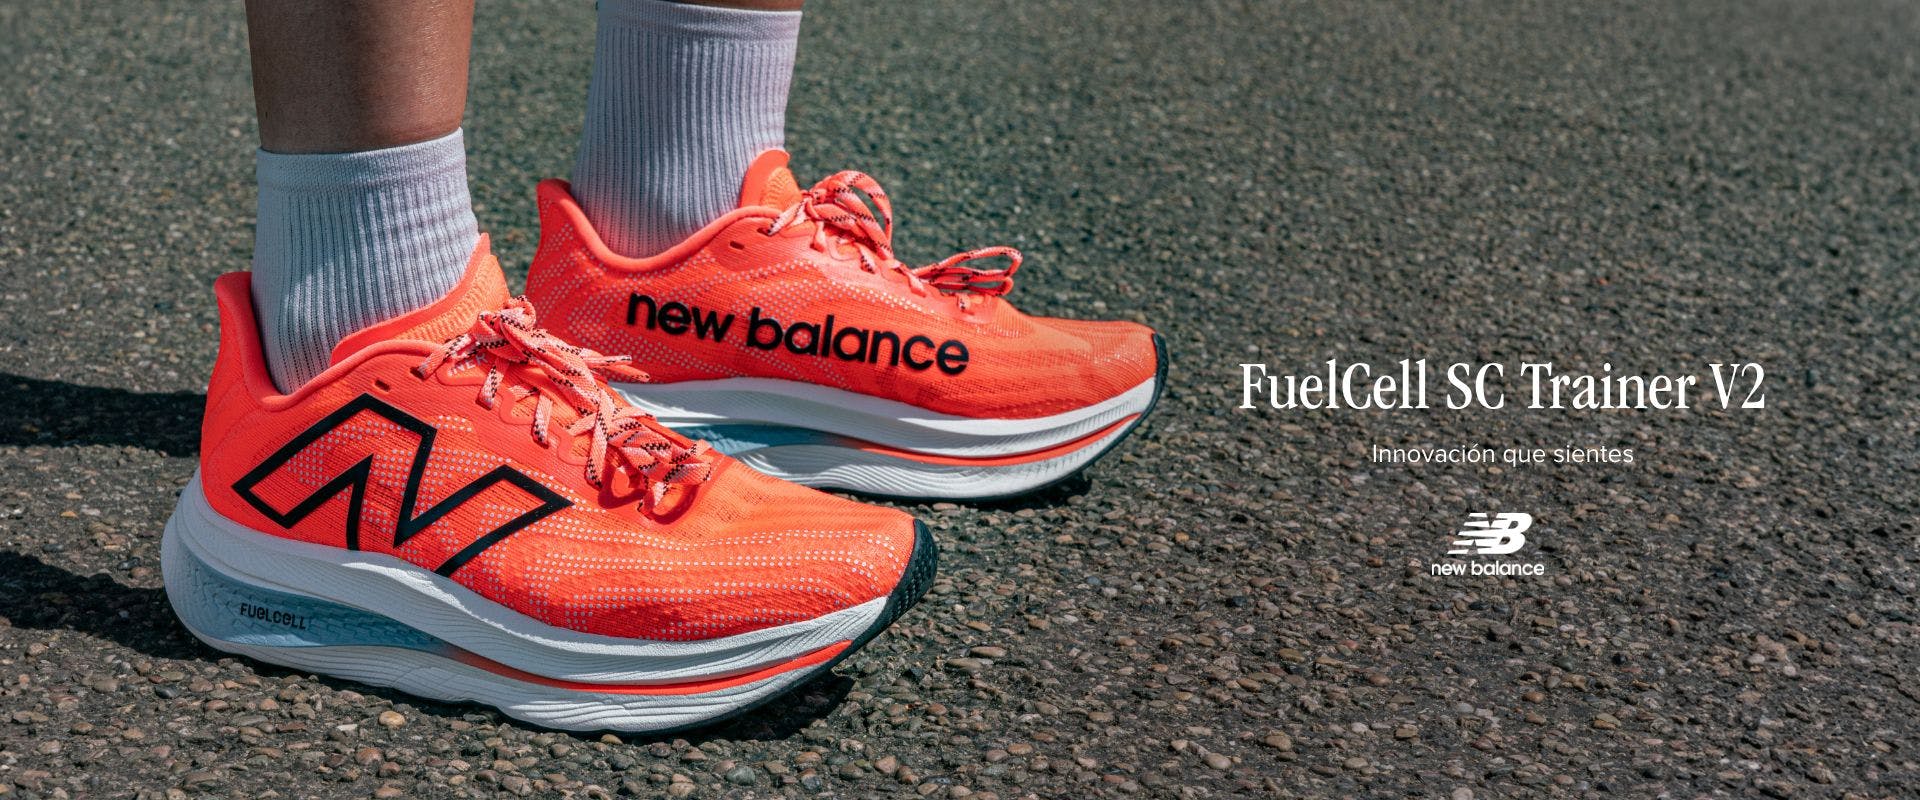 Balance: calzado y ropa de running | SportsShoes.com